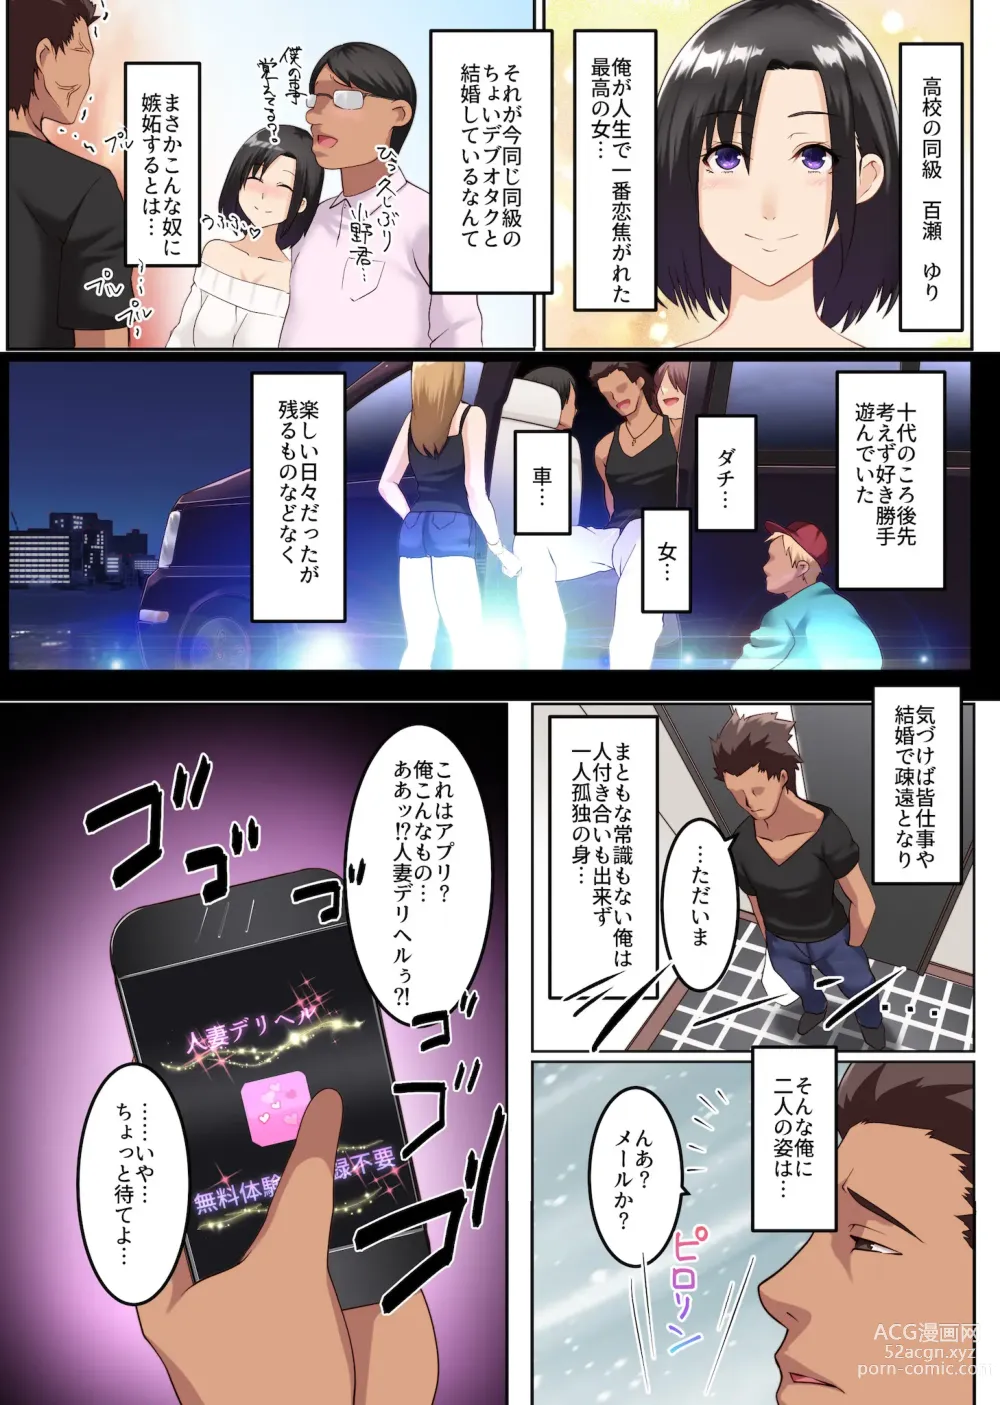 Page 3 of manga Hitozuma Sokuochi! Hitozuma Senyou DeliHeal App 2 (uncensored)